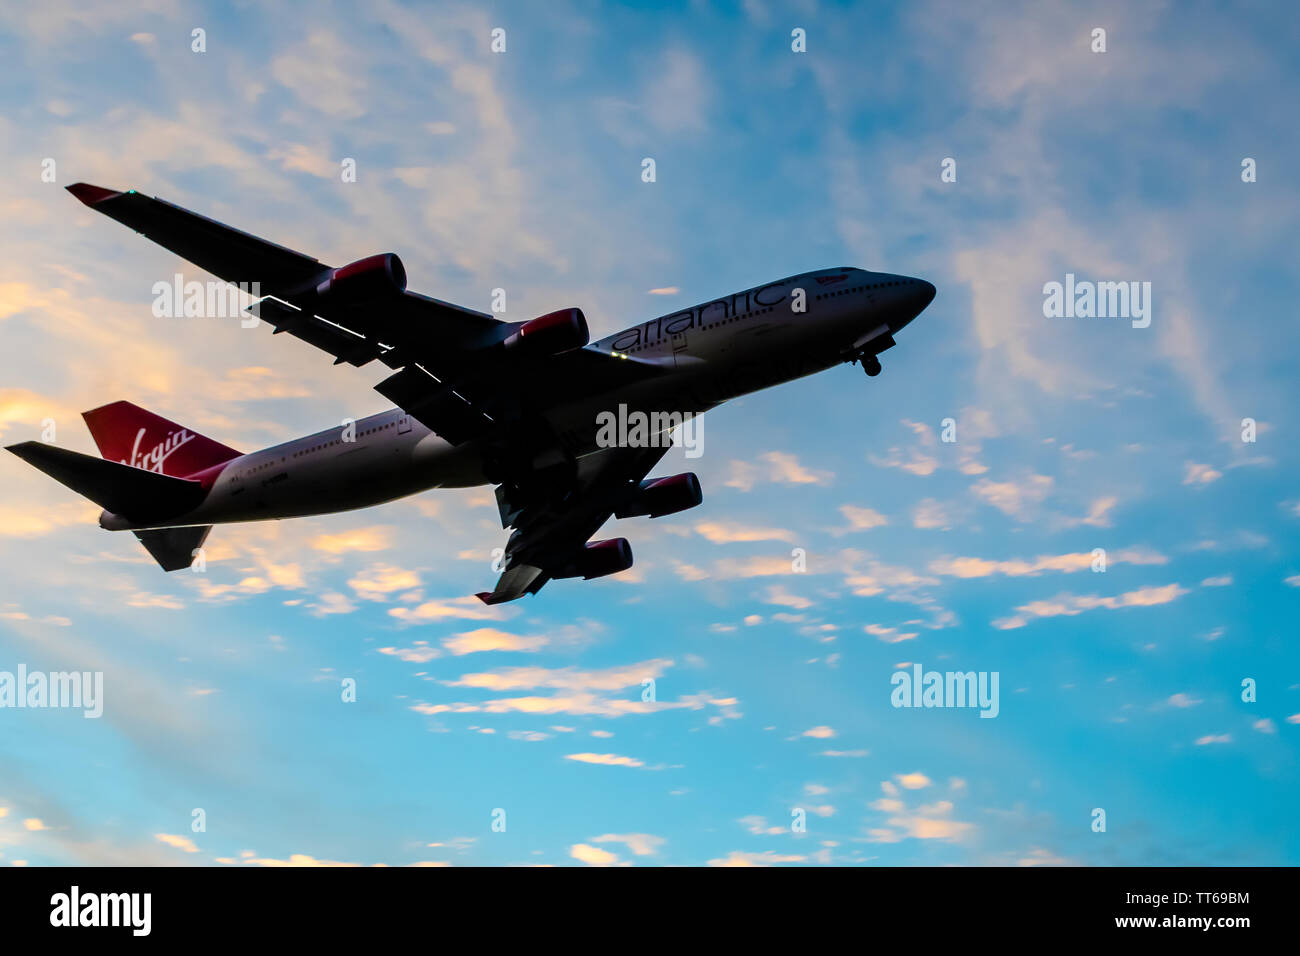 Montego Bay, Jamaïque - 21 mai 2019 - Virgin Atlantic Airlines Boeing 747-443 appareil décoller de Sangster International (MBJ) aéroport Banque D'Images